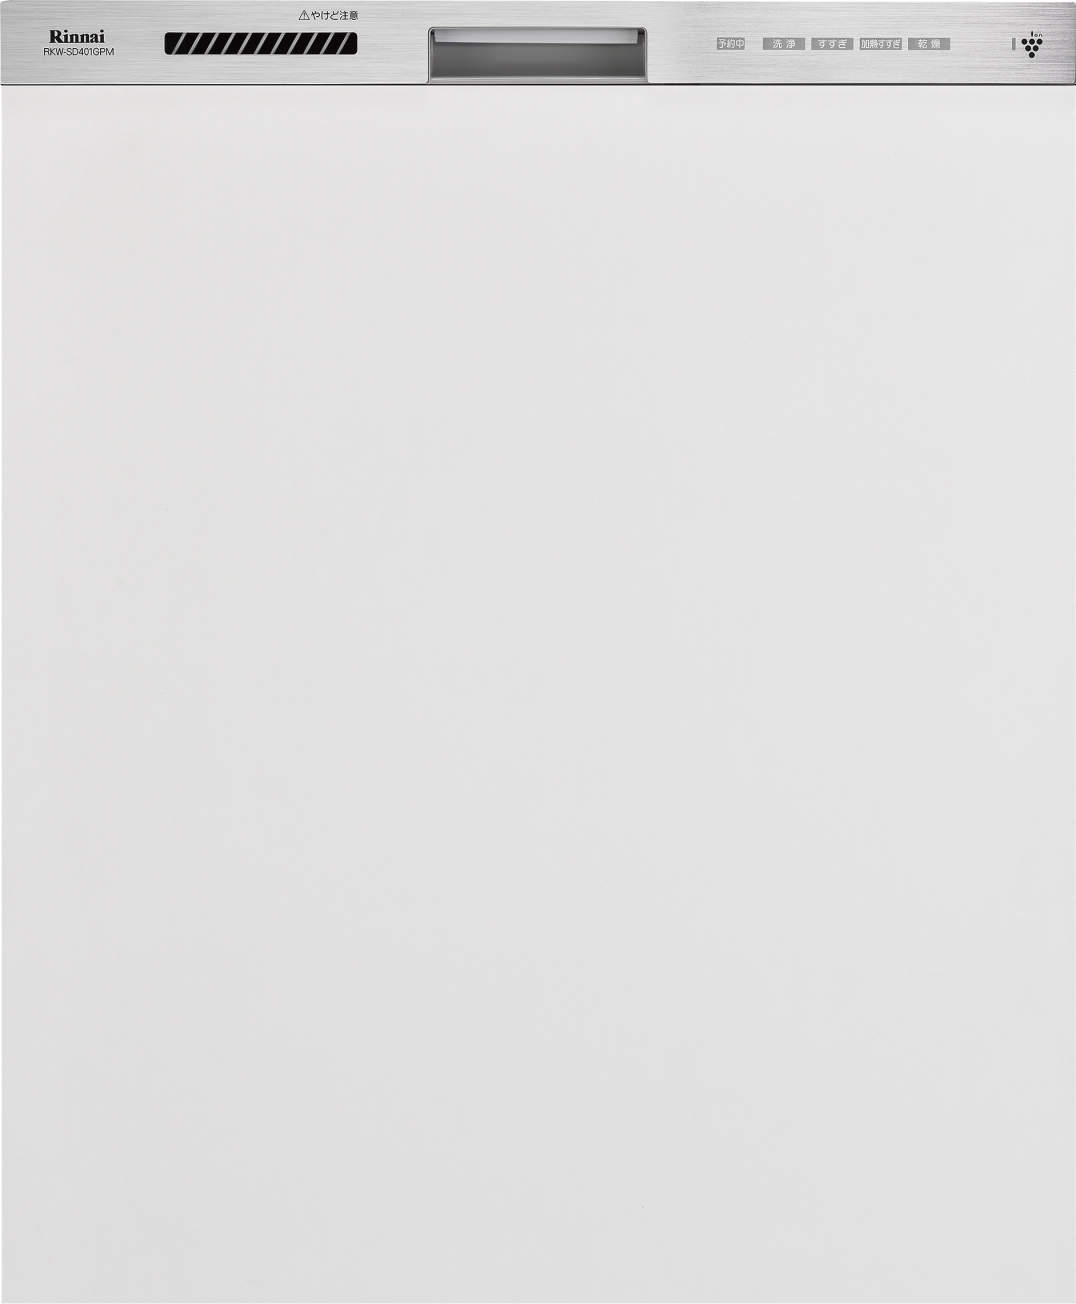 70680円 国内在庫 ####リンナイ 食器洗い乾燥機ステンレス調 深型スライドオープンタイプ 幅45cm ミドルグレード 化粧パネル対応 自立脚付タイプ